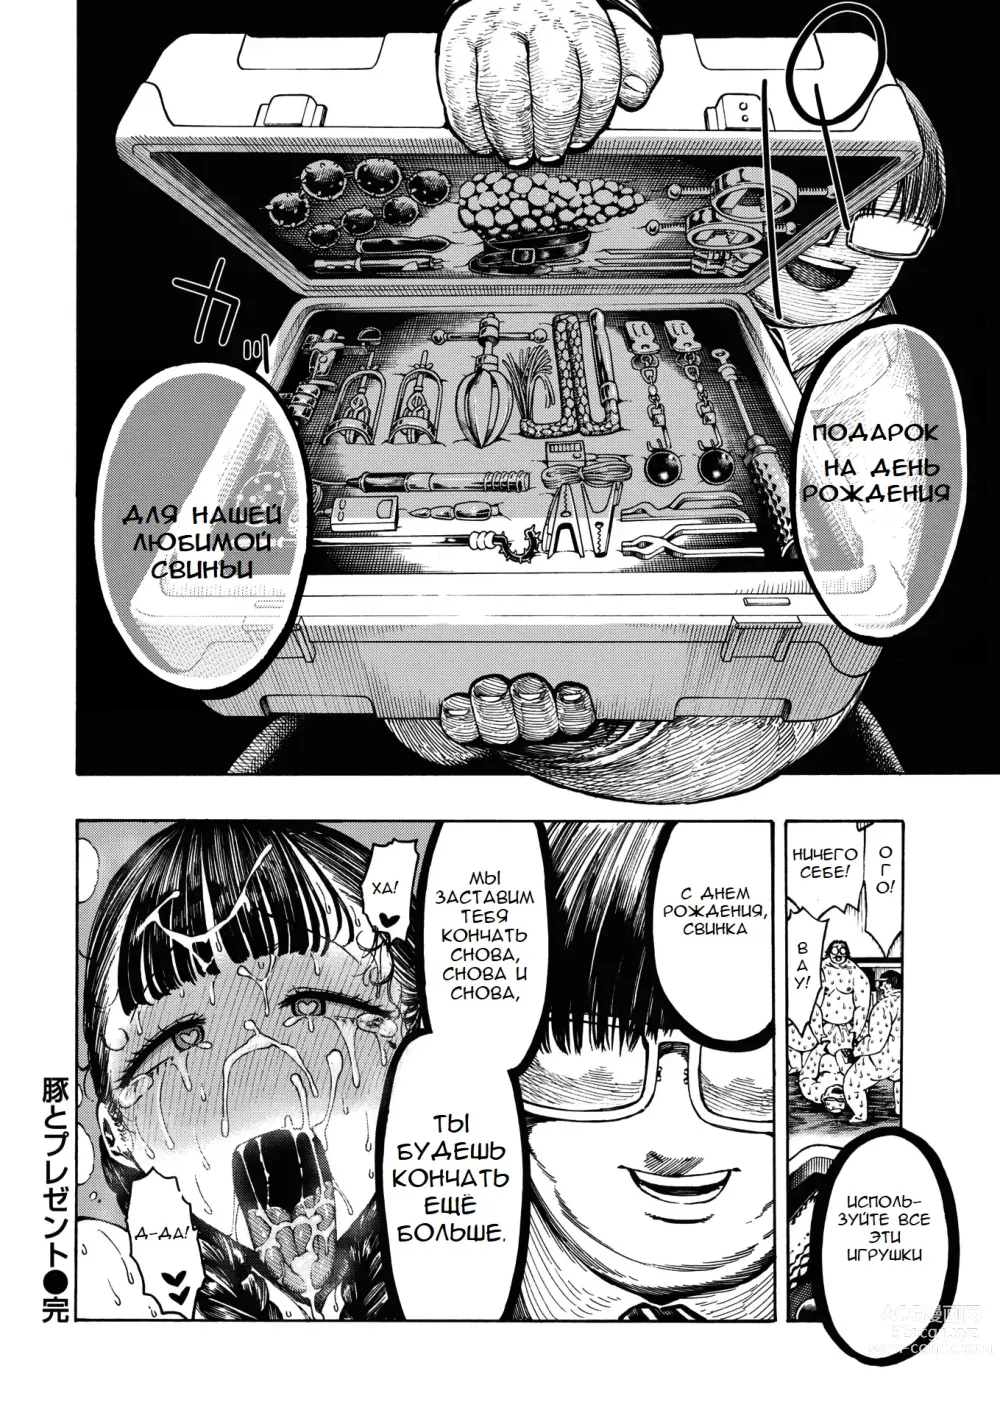 Page 21 of manga Buta to Present